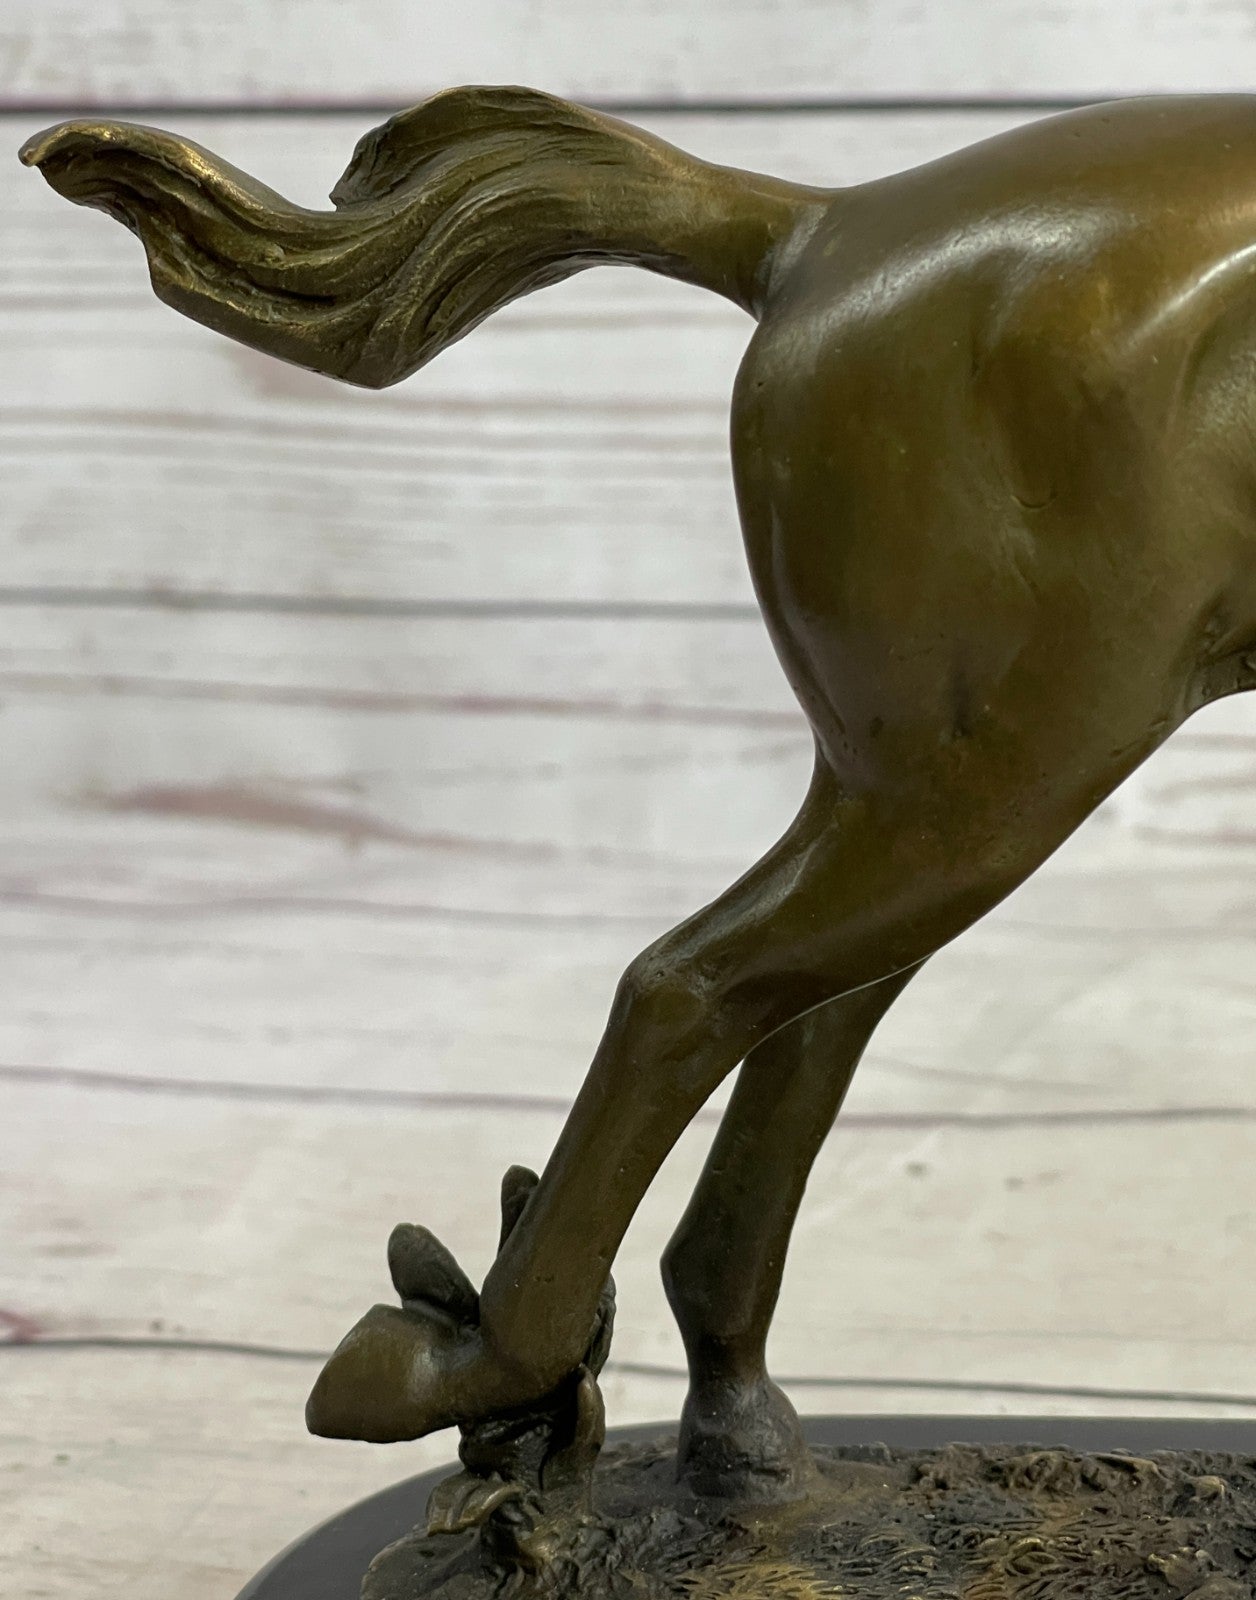 Handcrafted bronze sculpture SALE Horse Racing Jockey Girl Art Western Deco Art